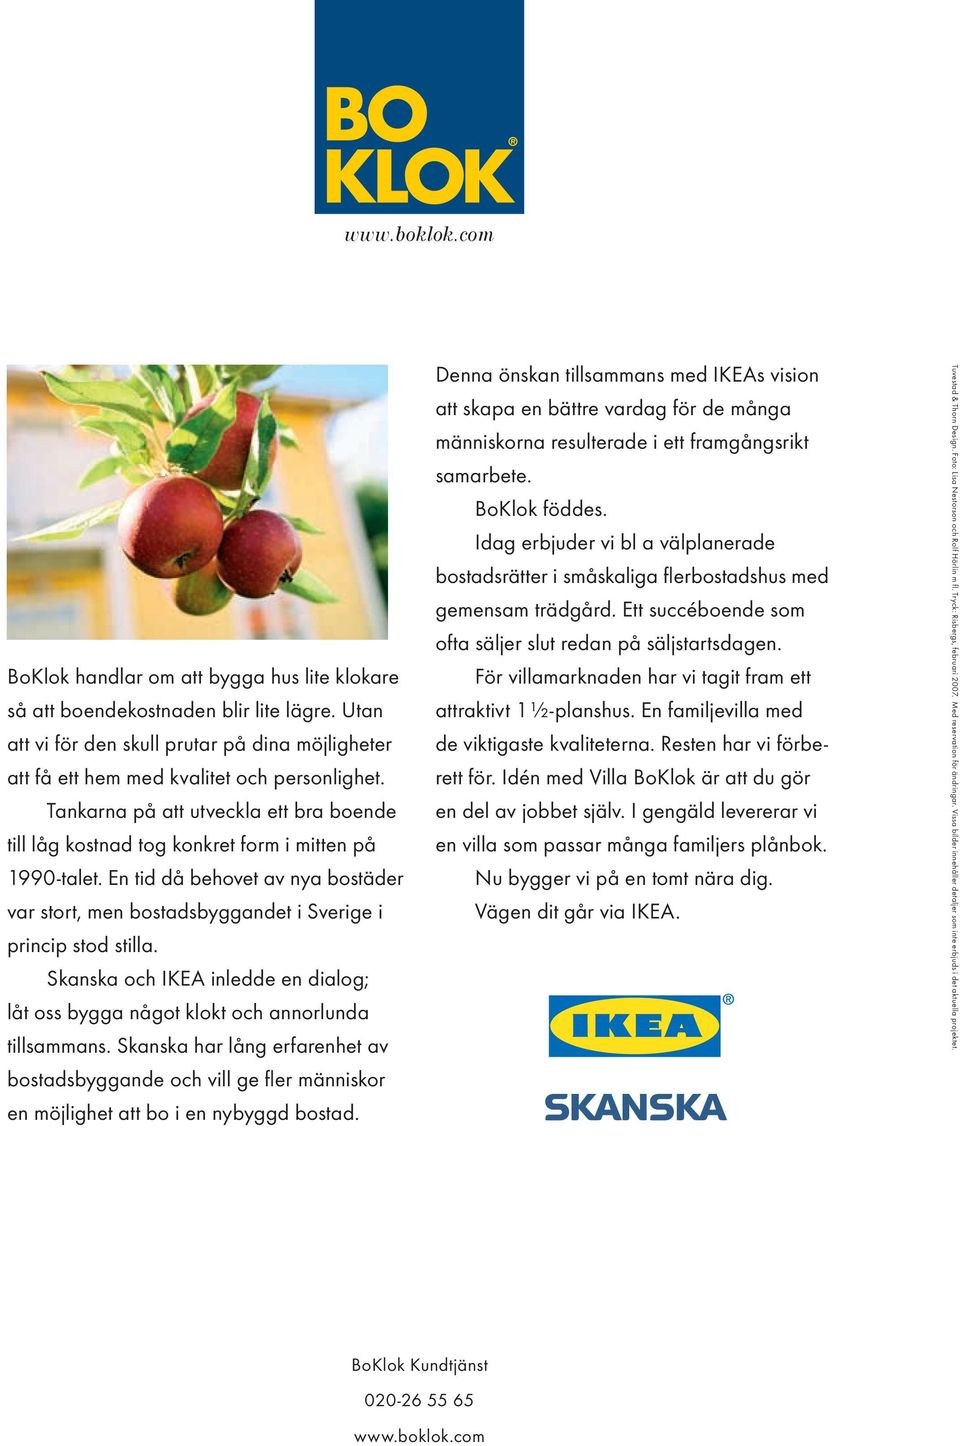 Skanska och IKEA inledde en dialog; låt oss bygga något klokt och annorlunda tillsammans.